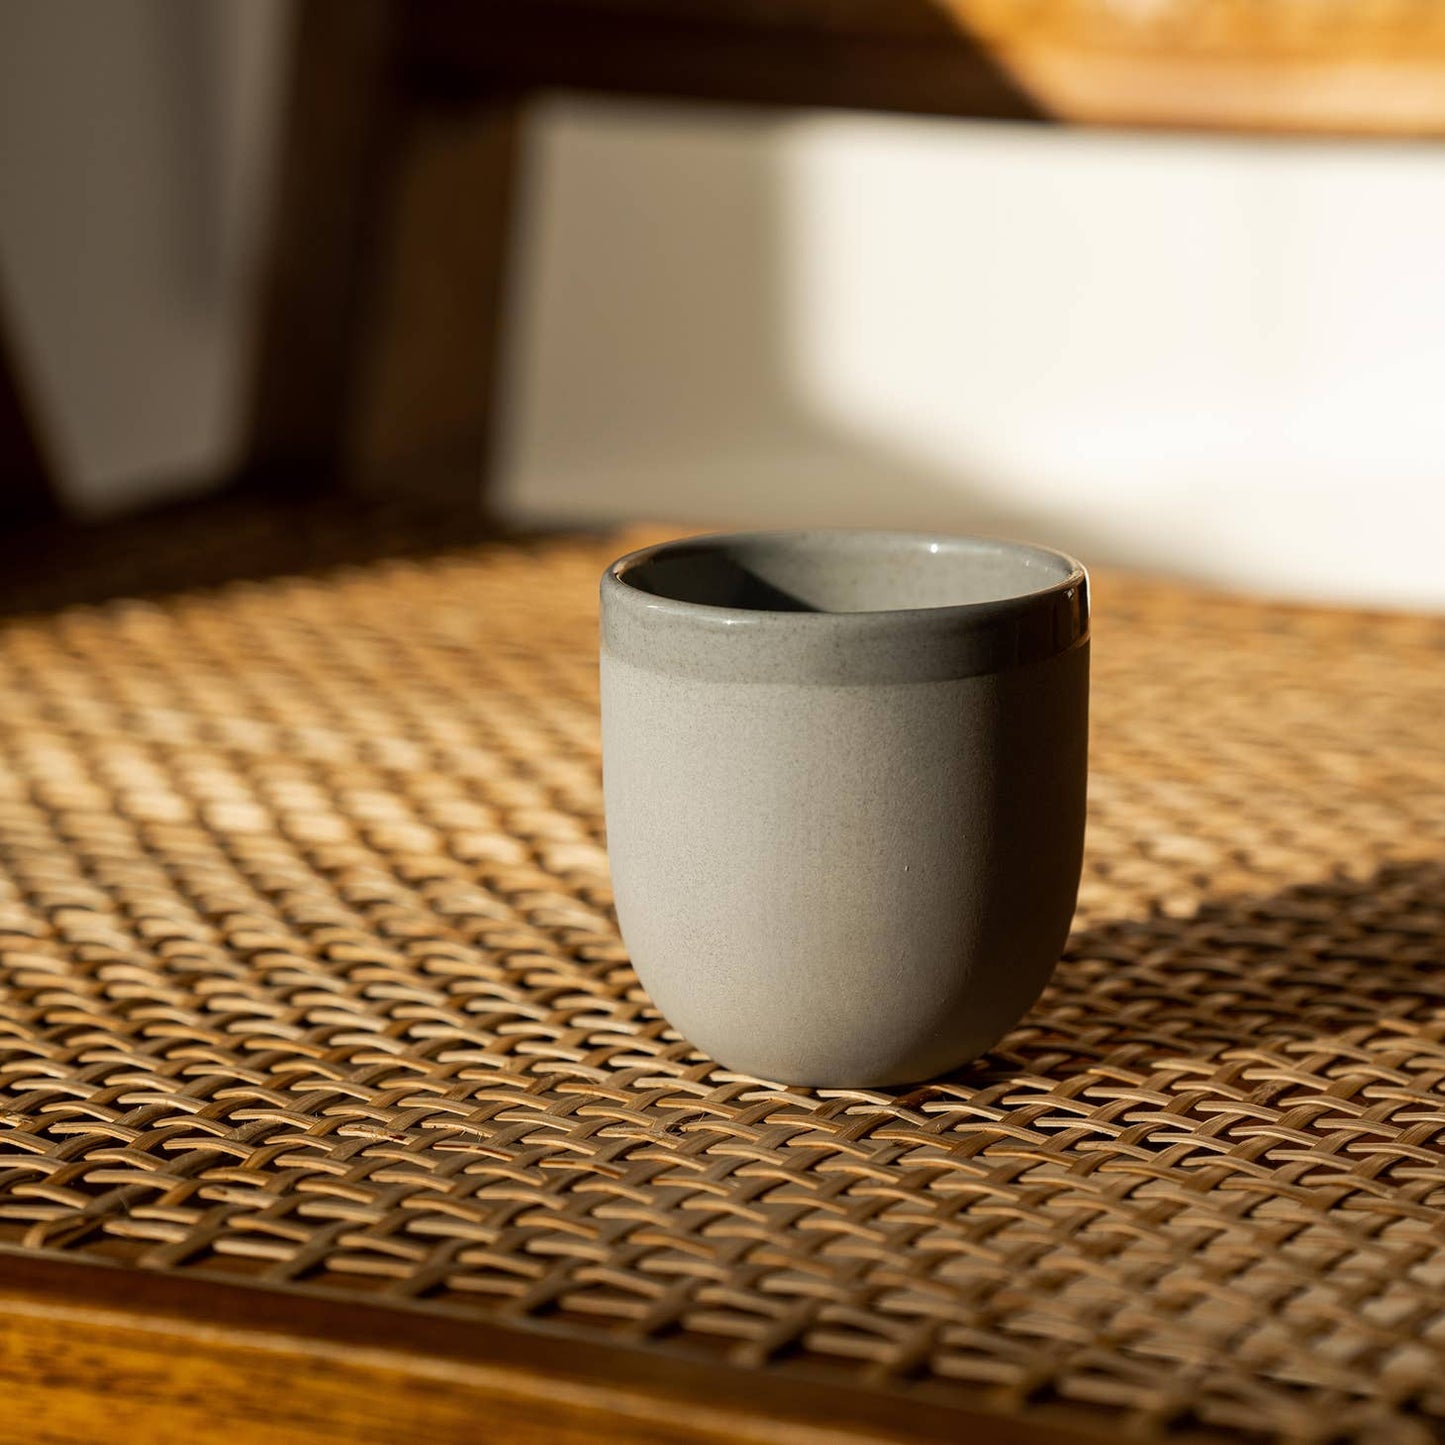 Ethical Trade Co Home Grey Sky / Espresso Cup / Plain Handmade Ukrainian Porcelain Cups